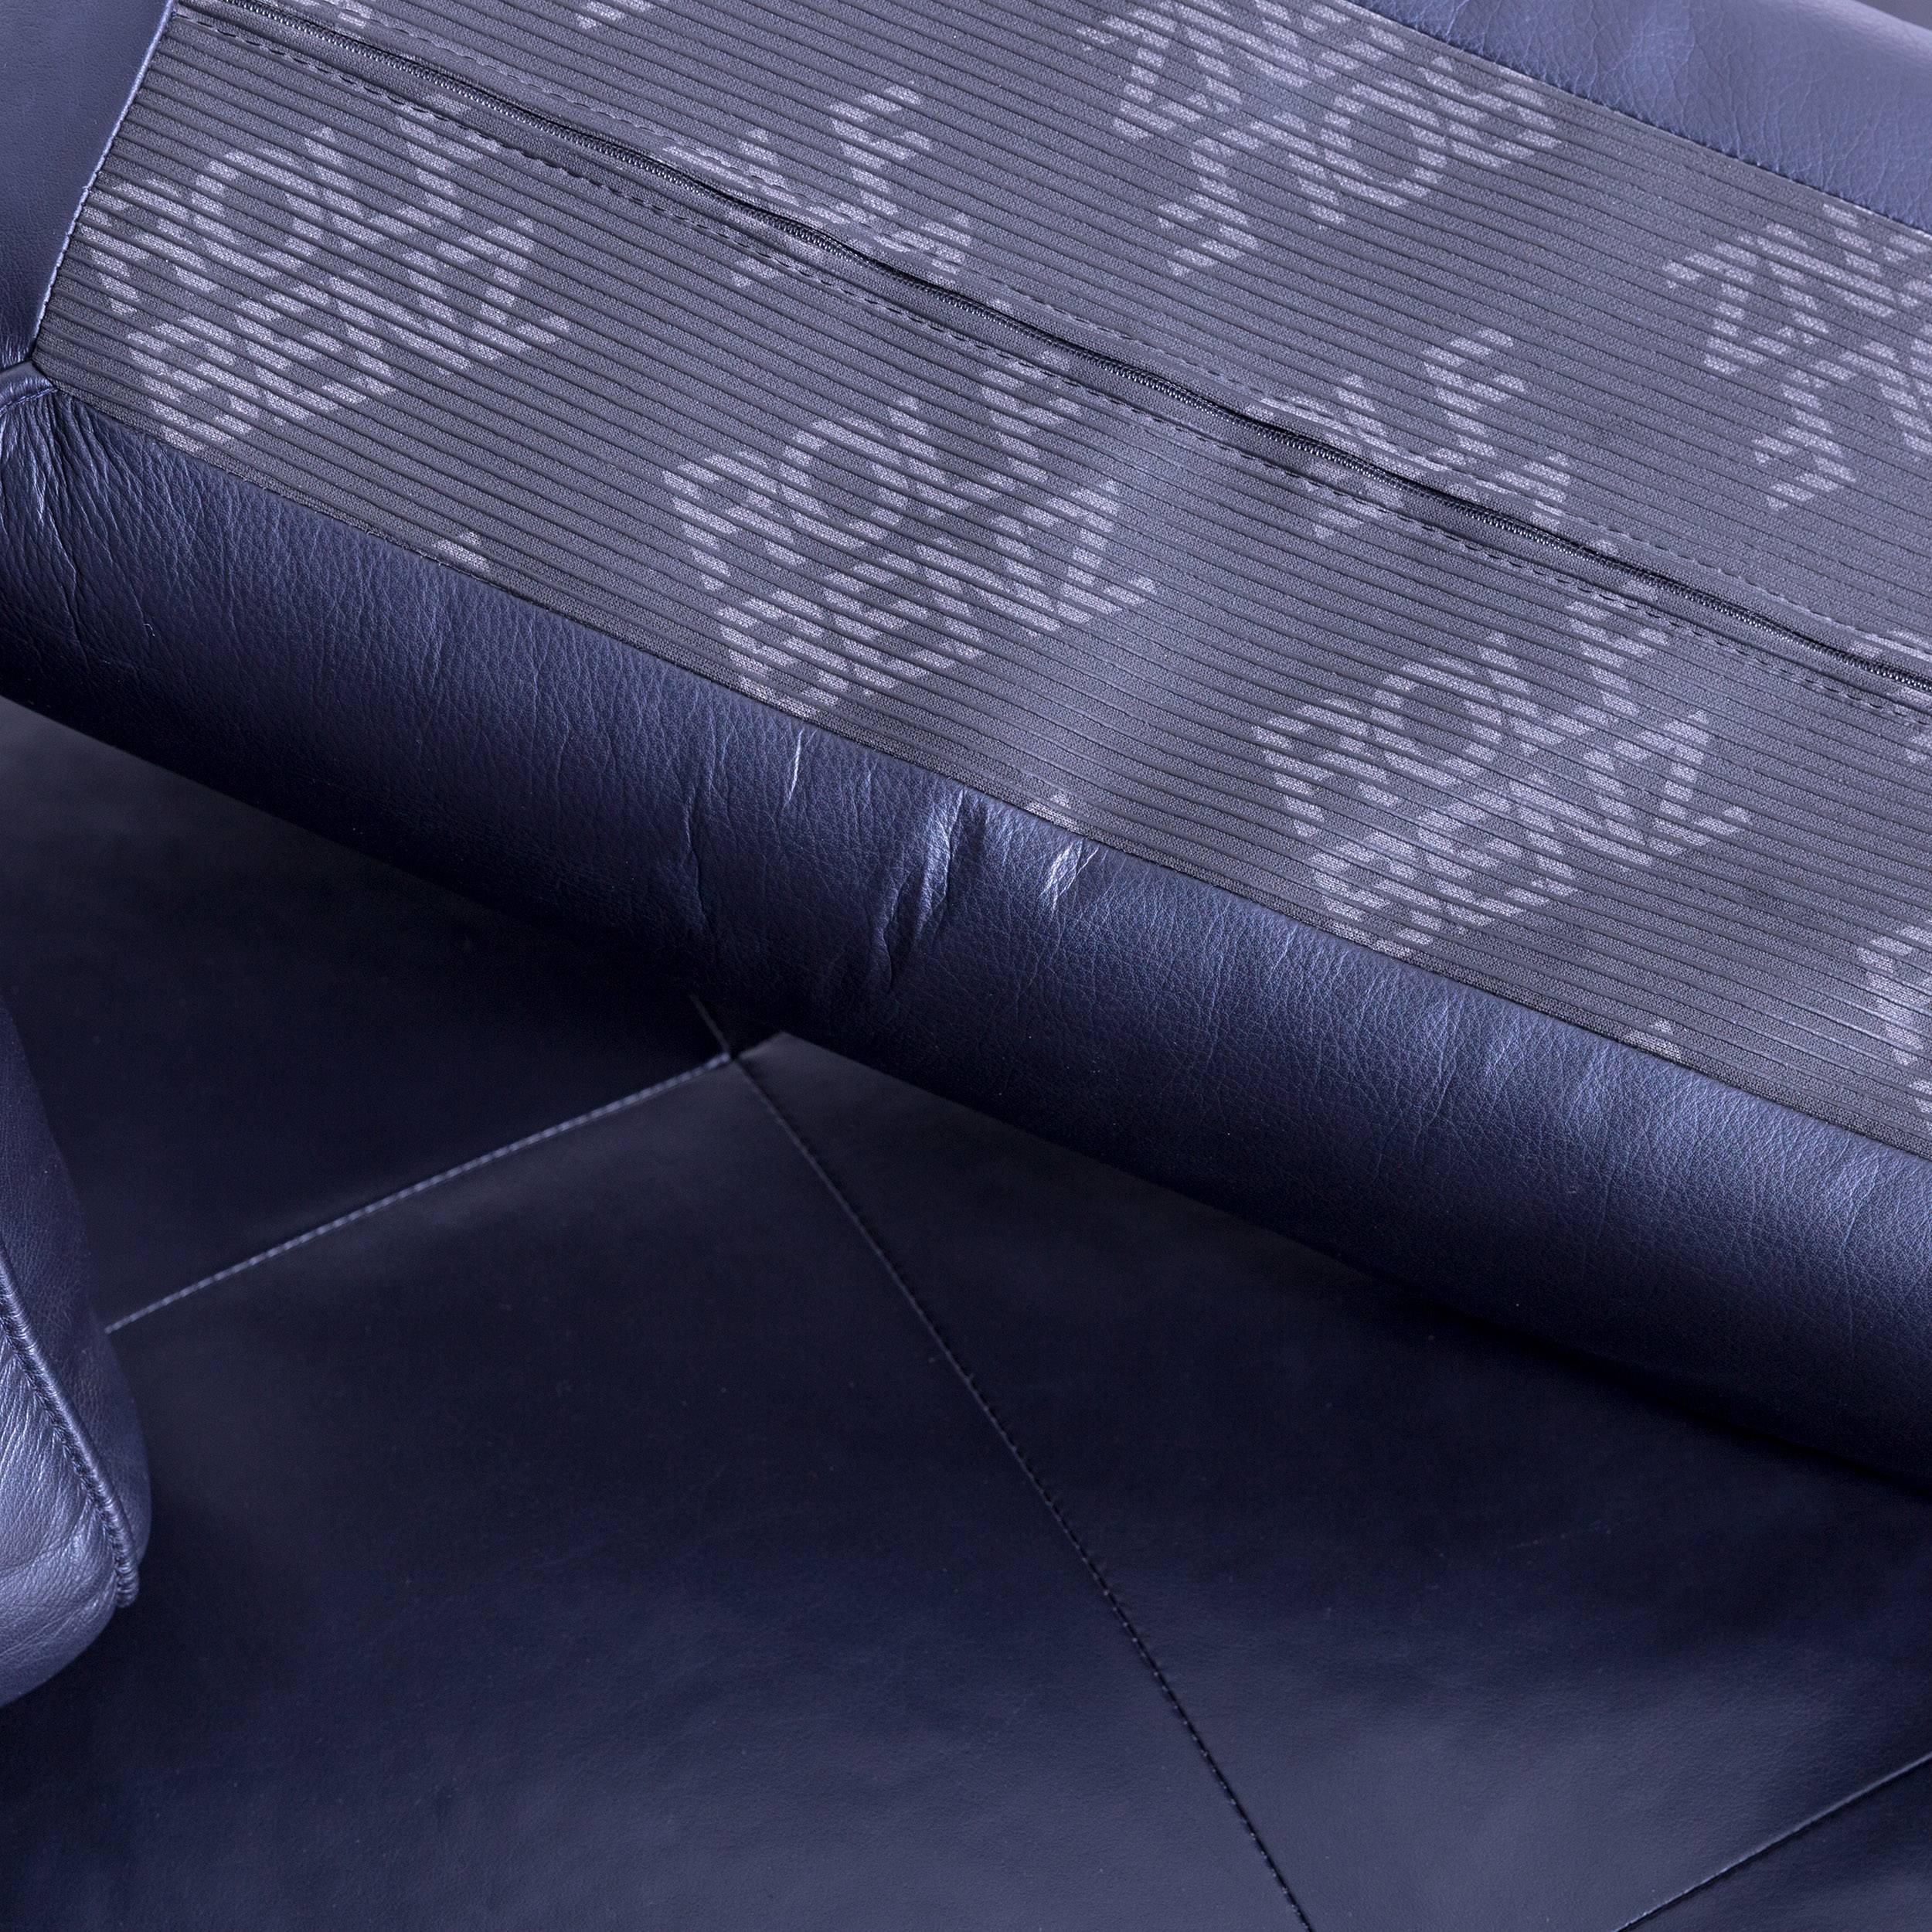 Rolf Benz Dono Designer Corner Sofa Leather Navy Blue Dark Blue Sleeping Couch 4